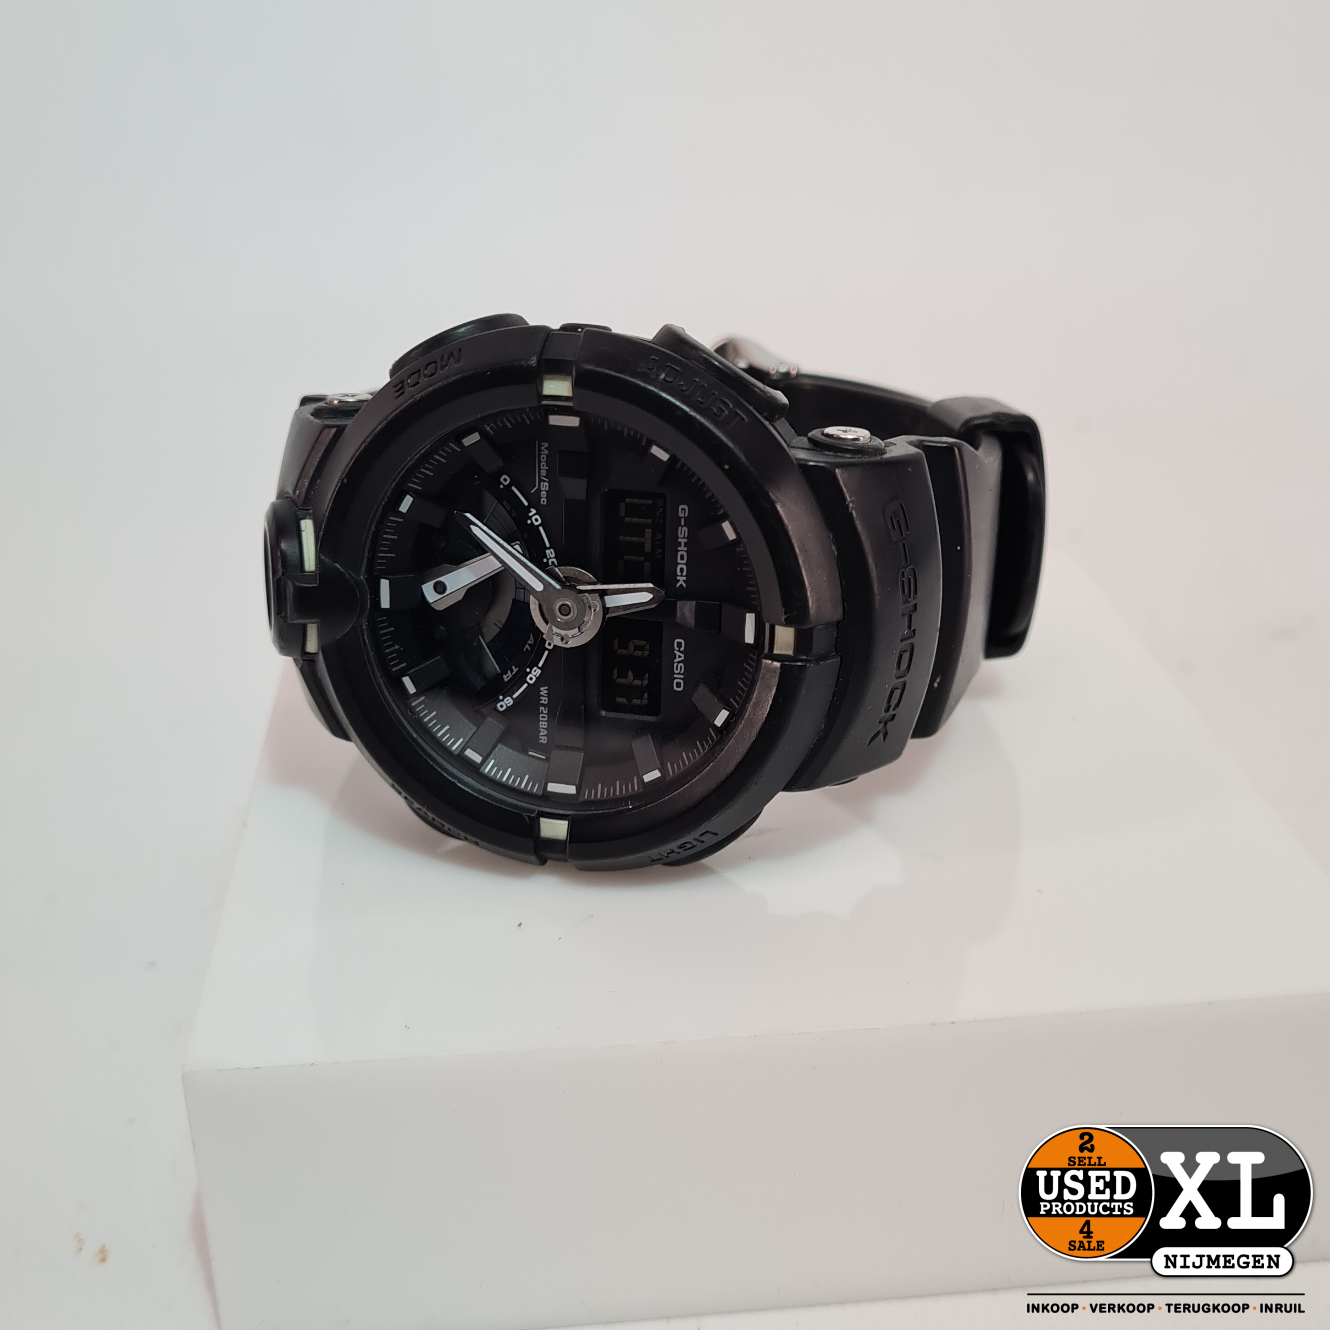 werkzaamheid Afwijzen cursief Casio G-Shock 200M GA-500-1A Heren Horloge | Nette Staat - Used Products  Nijmegen XL